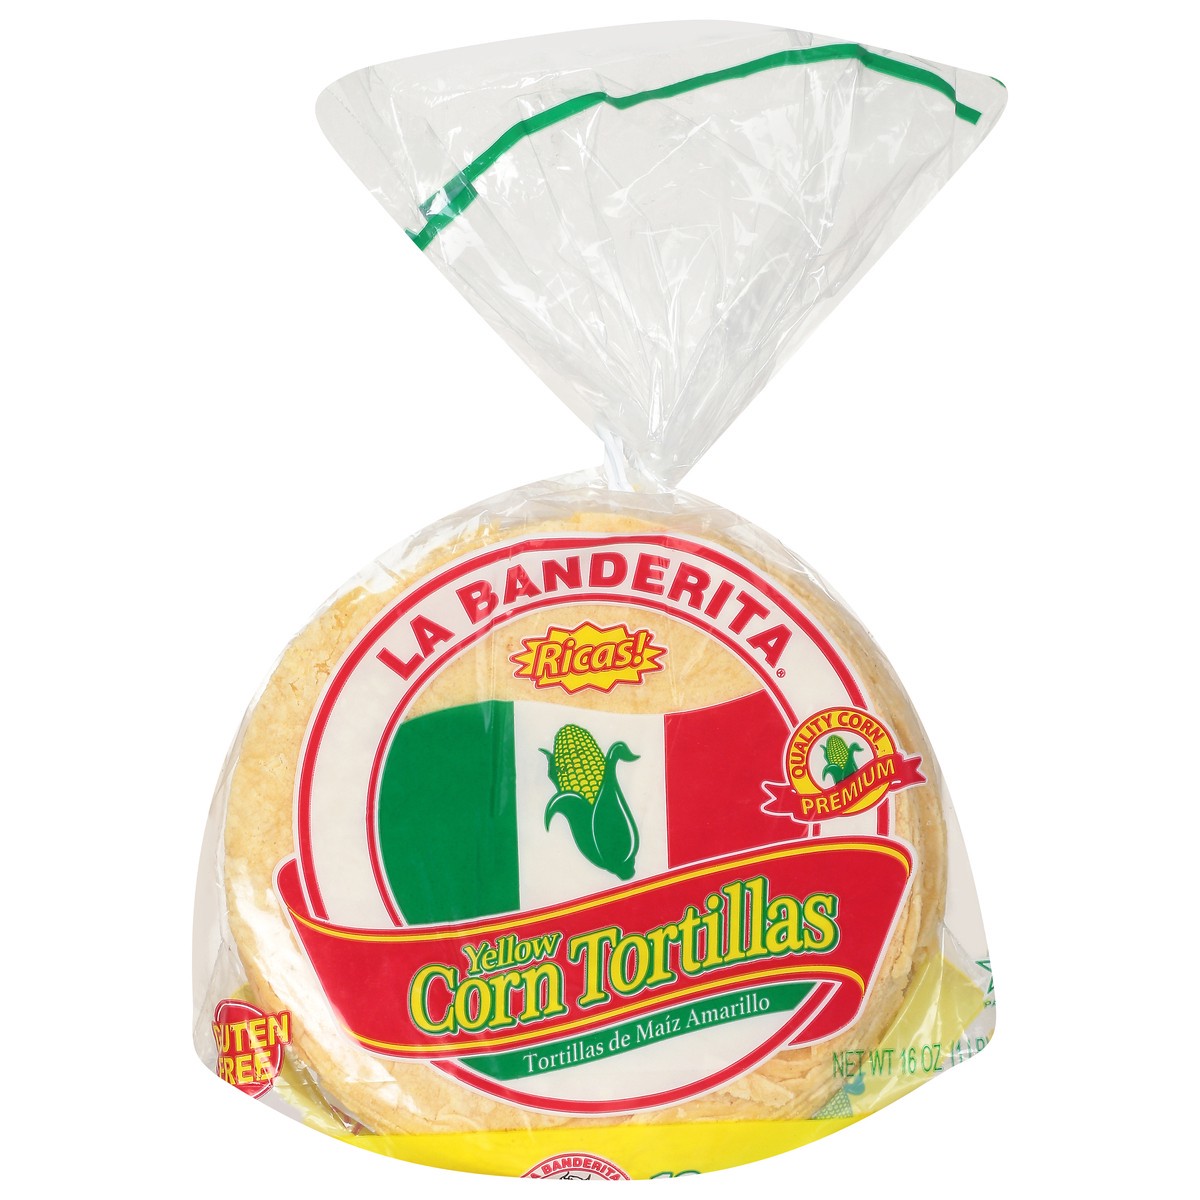 slide 1 of 9, La Banderita Corn Yellow Tortillas 18 ea, 18 ct